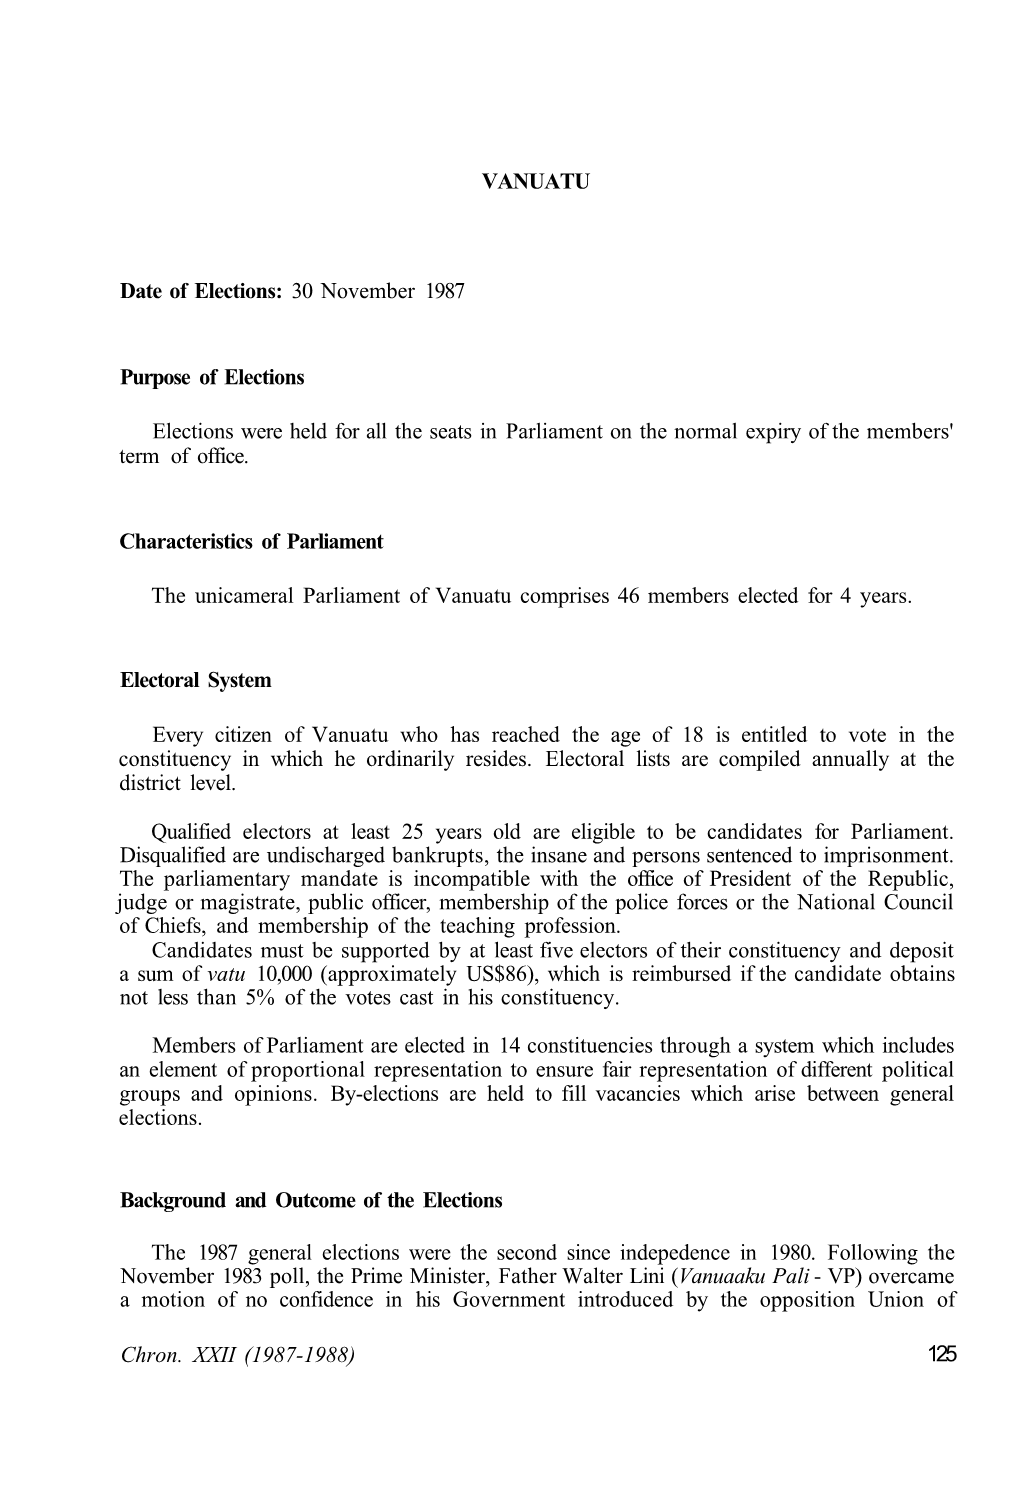 VANUATU Date of Elections: 30 November 1987 Purpose Of